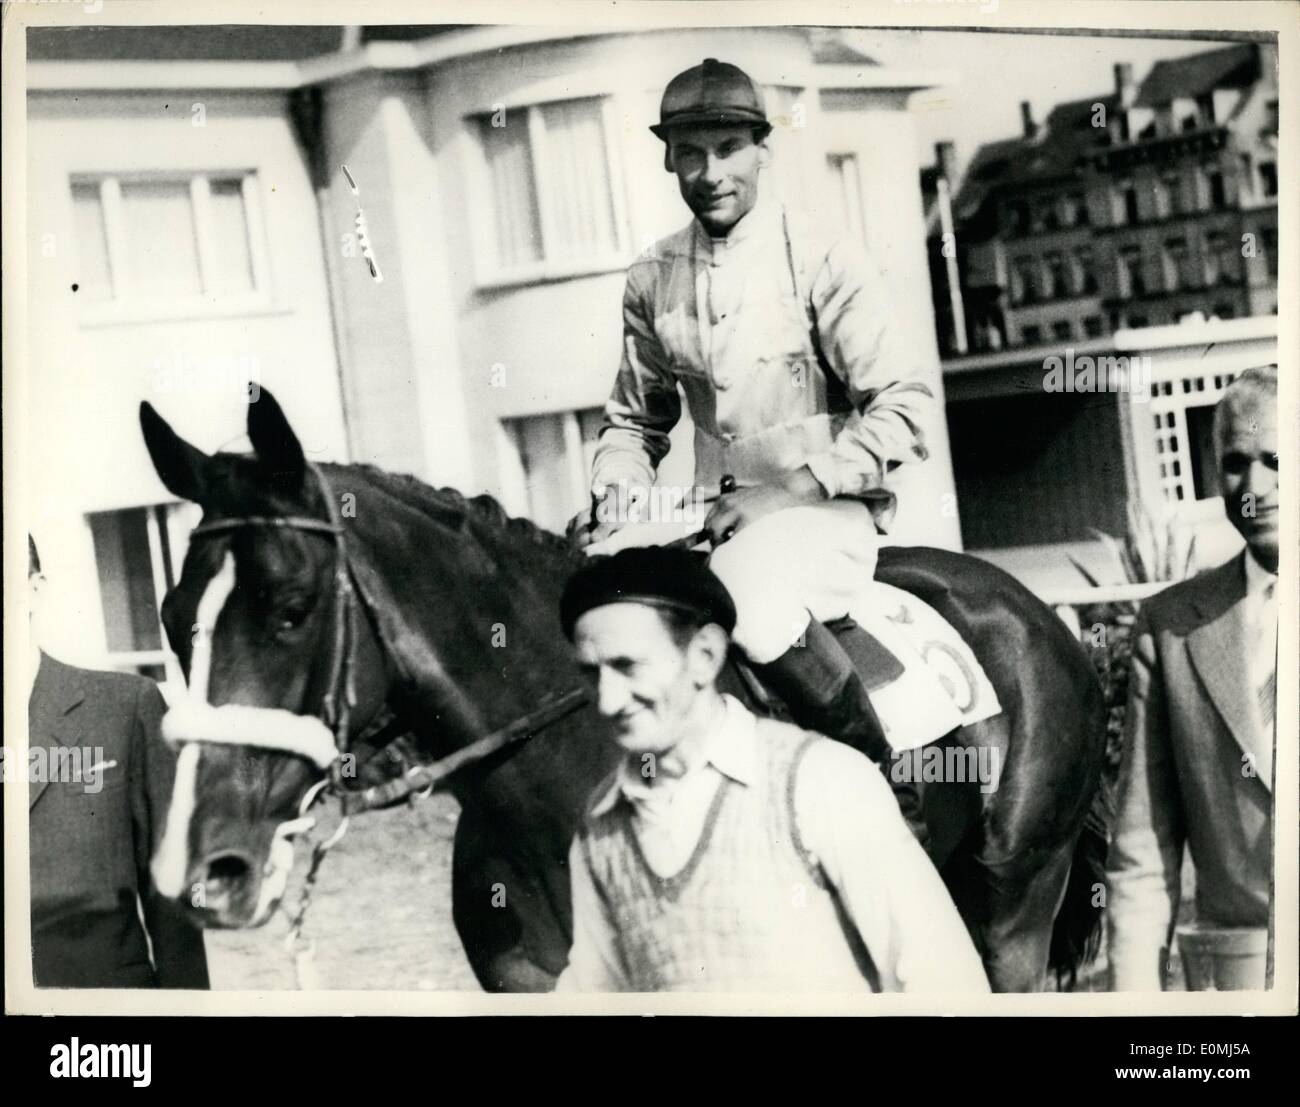 Agosto 08, 1955 - Grupo Capitán Townsend gana la carrera de caballos en Ostende: el Prix de Cyrano carrera de caballos en Oostende, Bélgica, hoy, fue ganado por el Grupo capitán Peter Townsend, en ''Kwenda''. La foto muestra el grupo Capitán Townsend visto ser conducido en después de ganar la carrera de hoy en Ostende, en ''Kwenda' Foto de stock